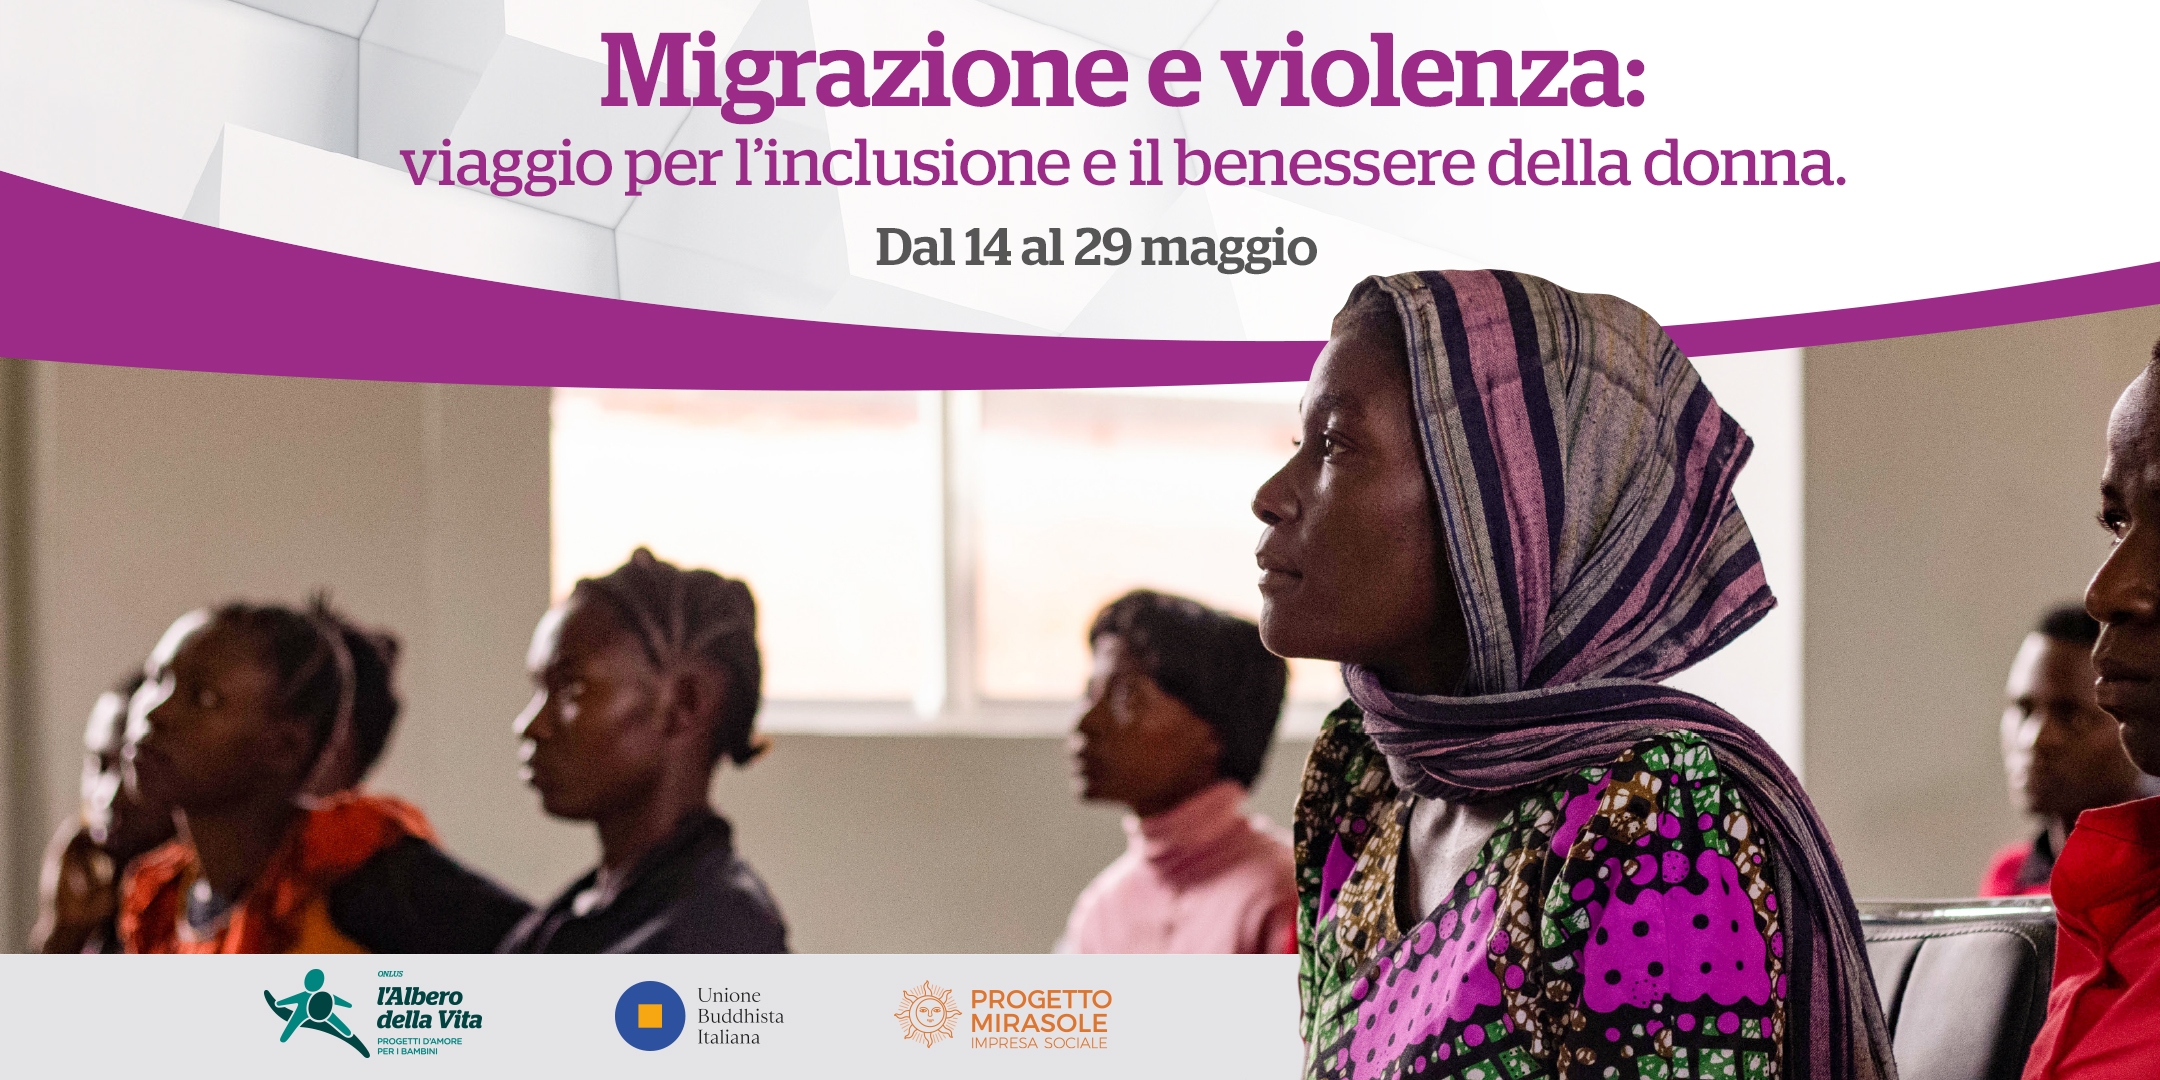 Al momento stai visualizzando Migrazioni e violenza: viaggio per l’inclusione e il benessere della donna